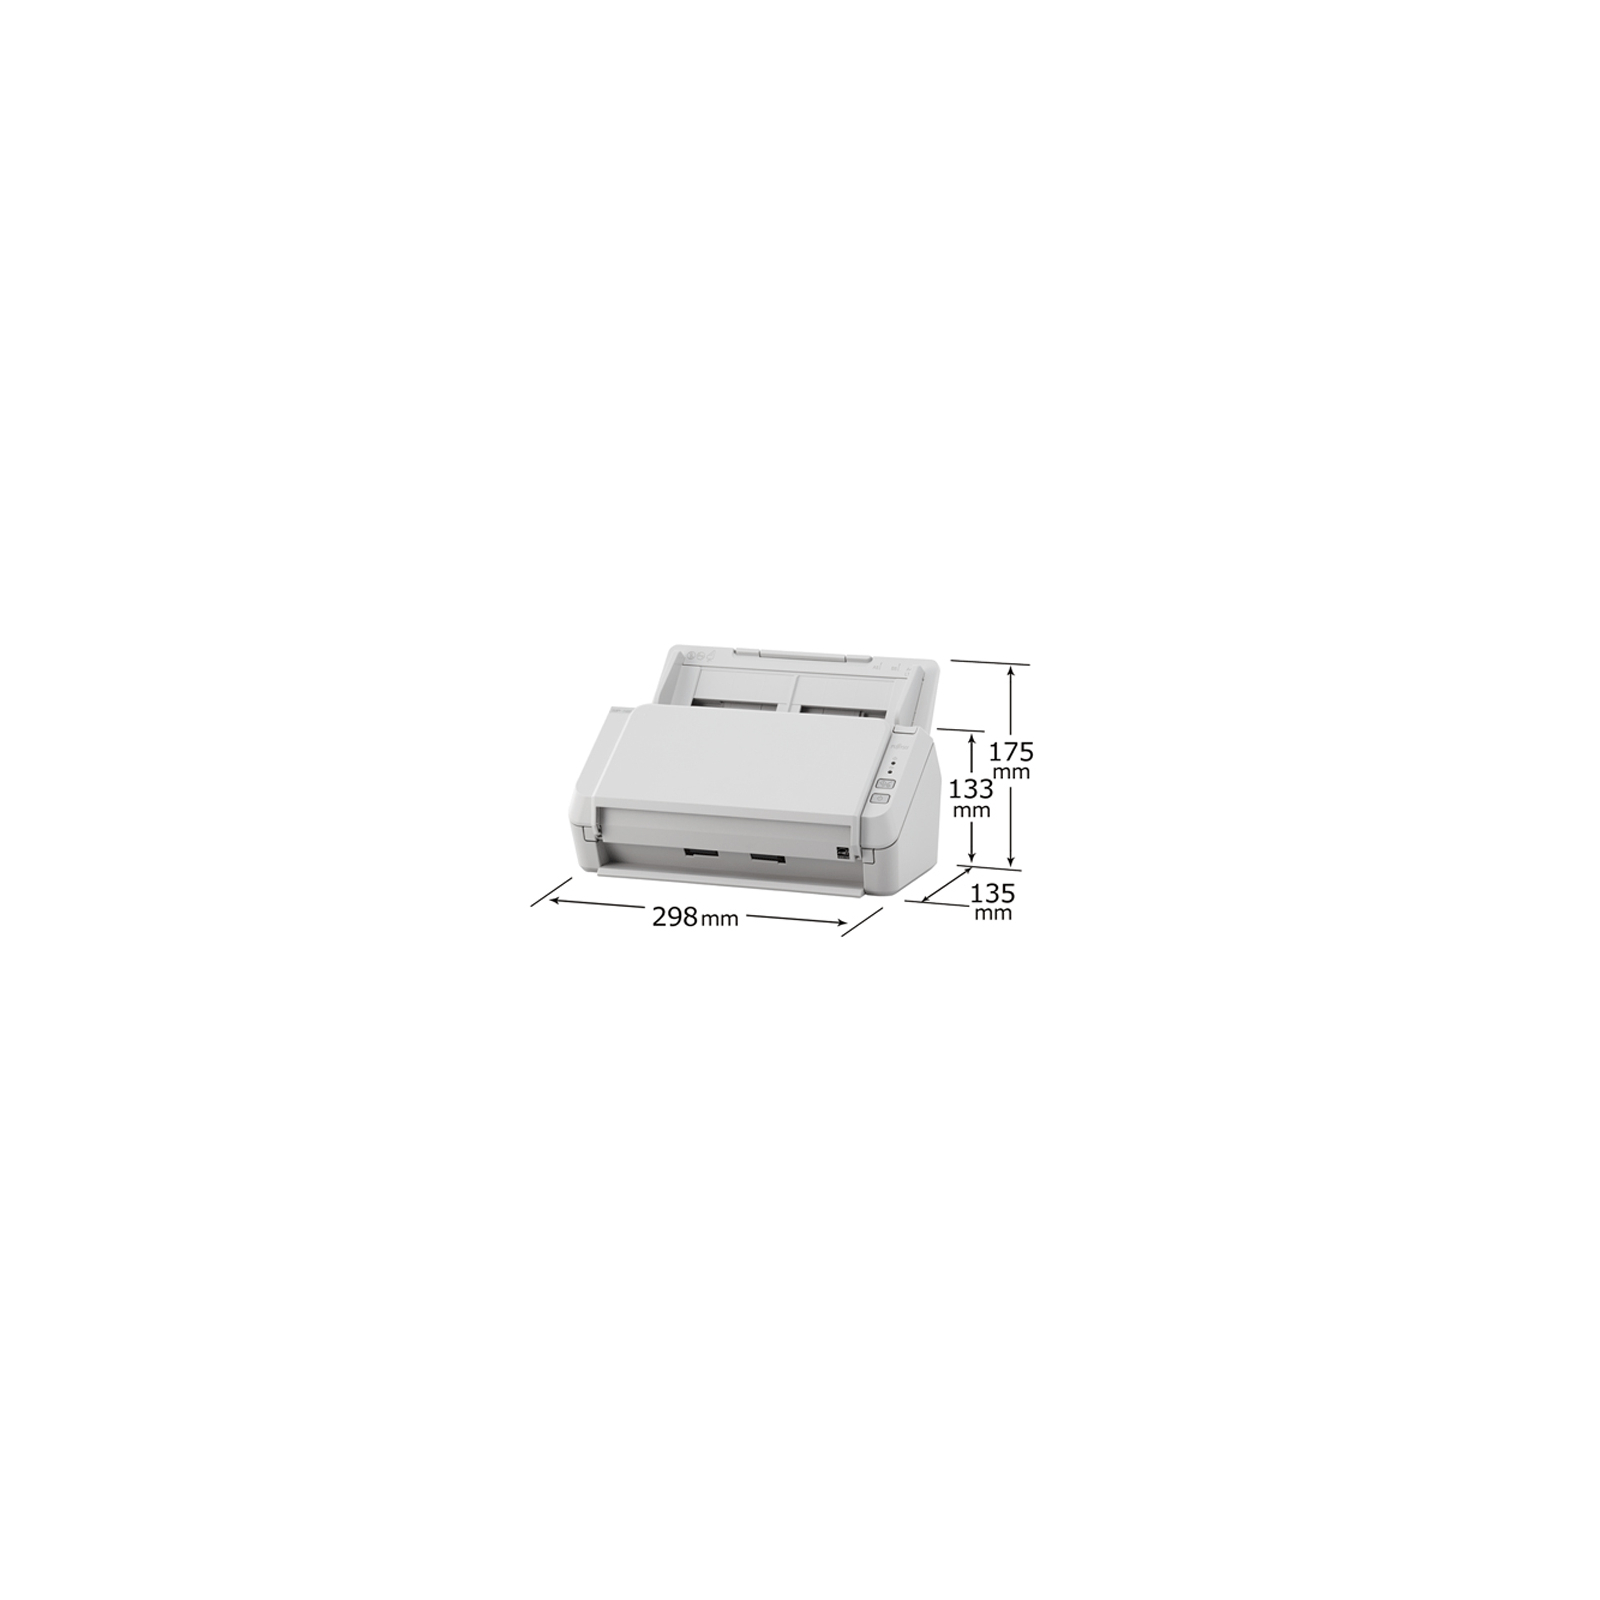 Сканер Fujitsu SP-1120 (PA03708-B001) изображение 6